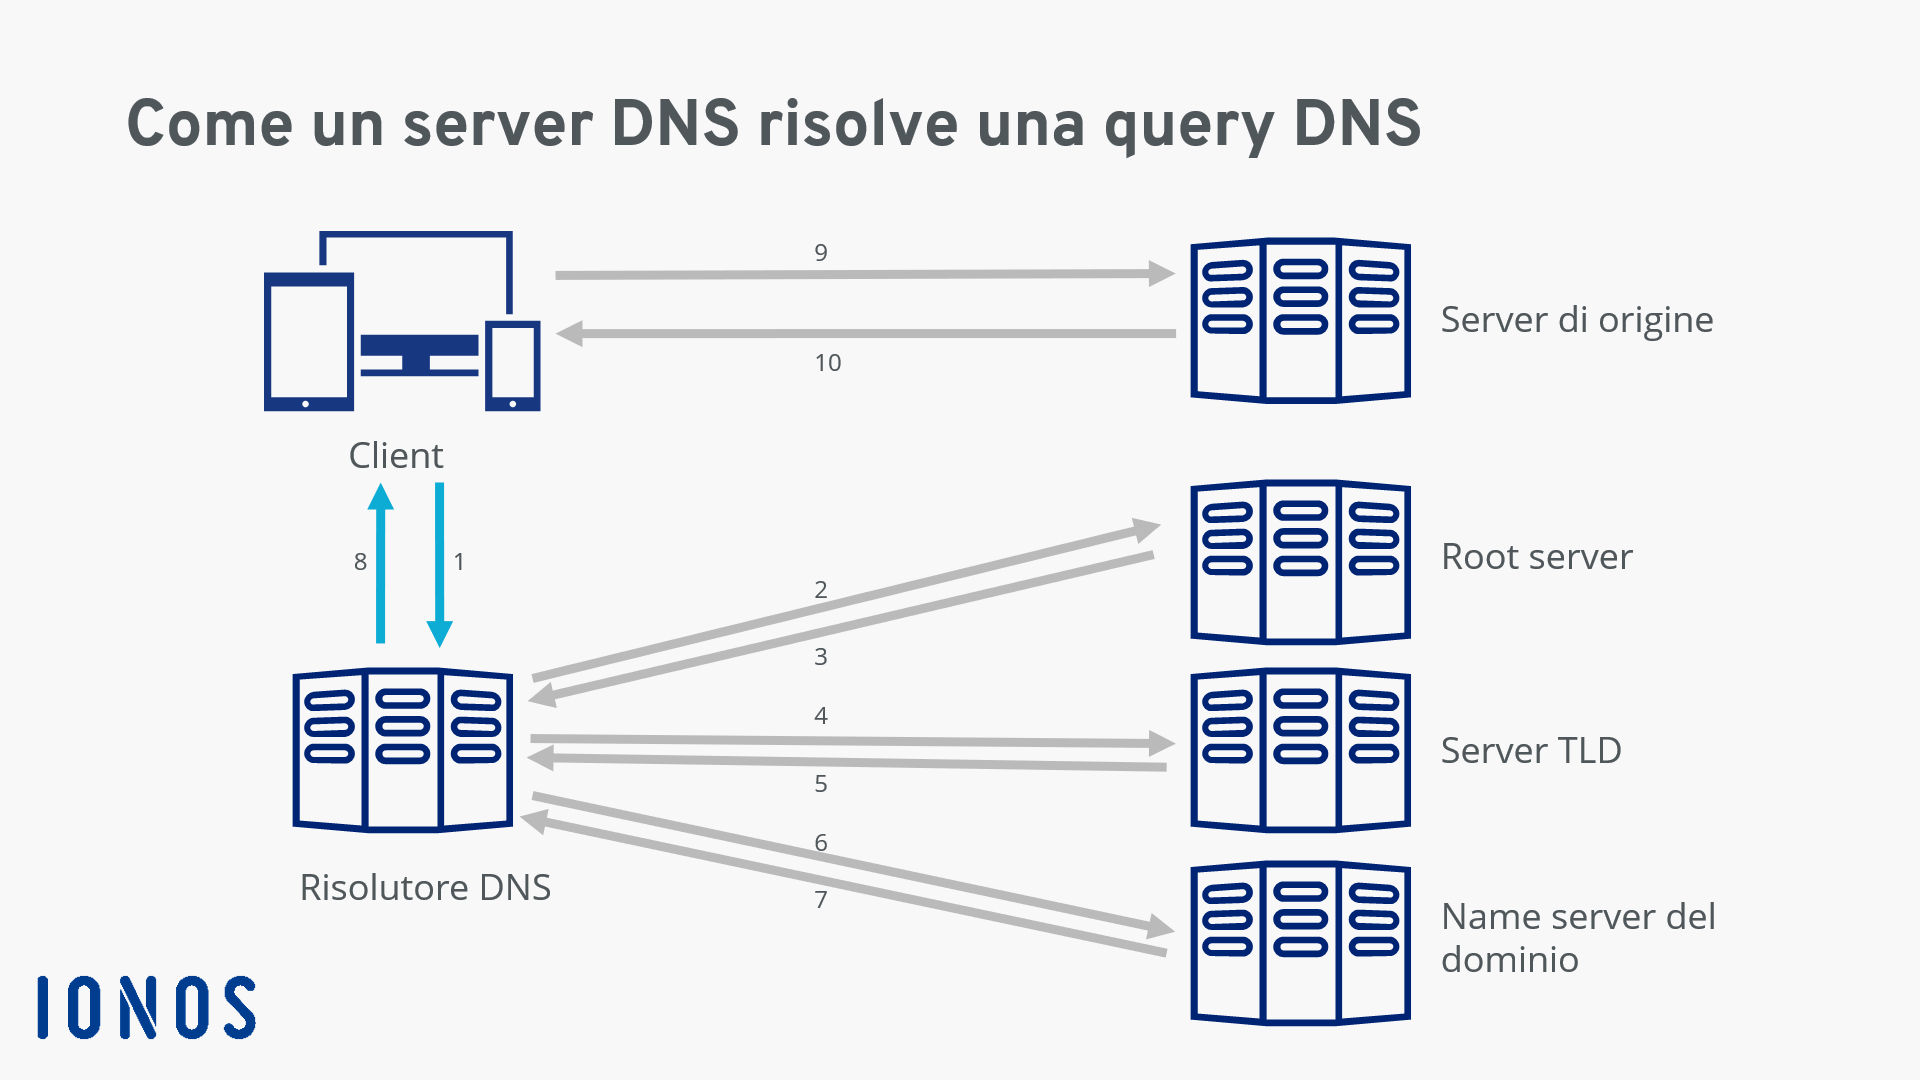 Grafica riassuntiva della risoluzione di una query DNS